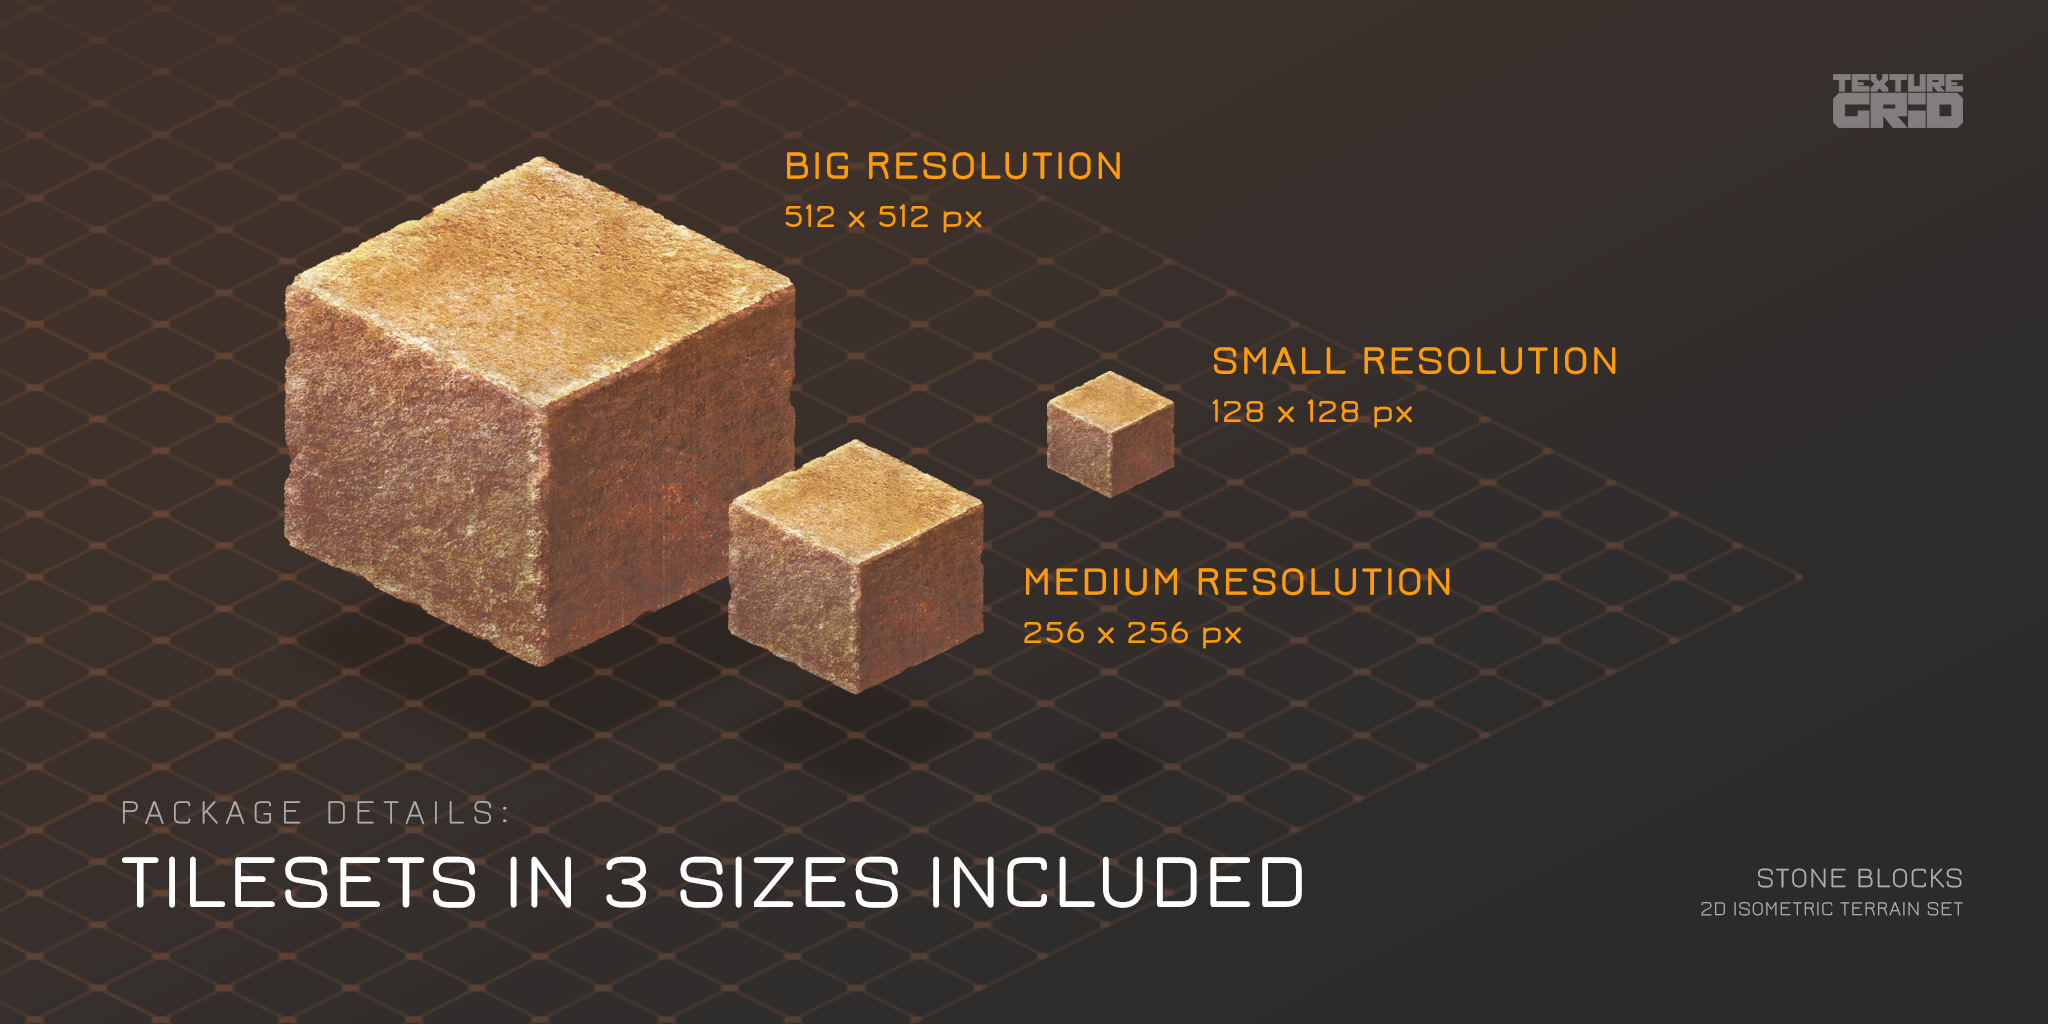 Stone Blocks tilesets in 3 sizes